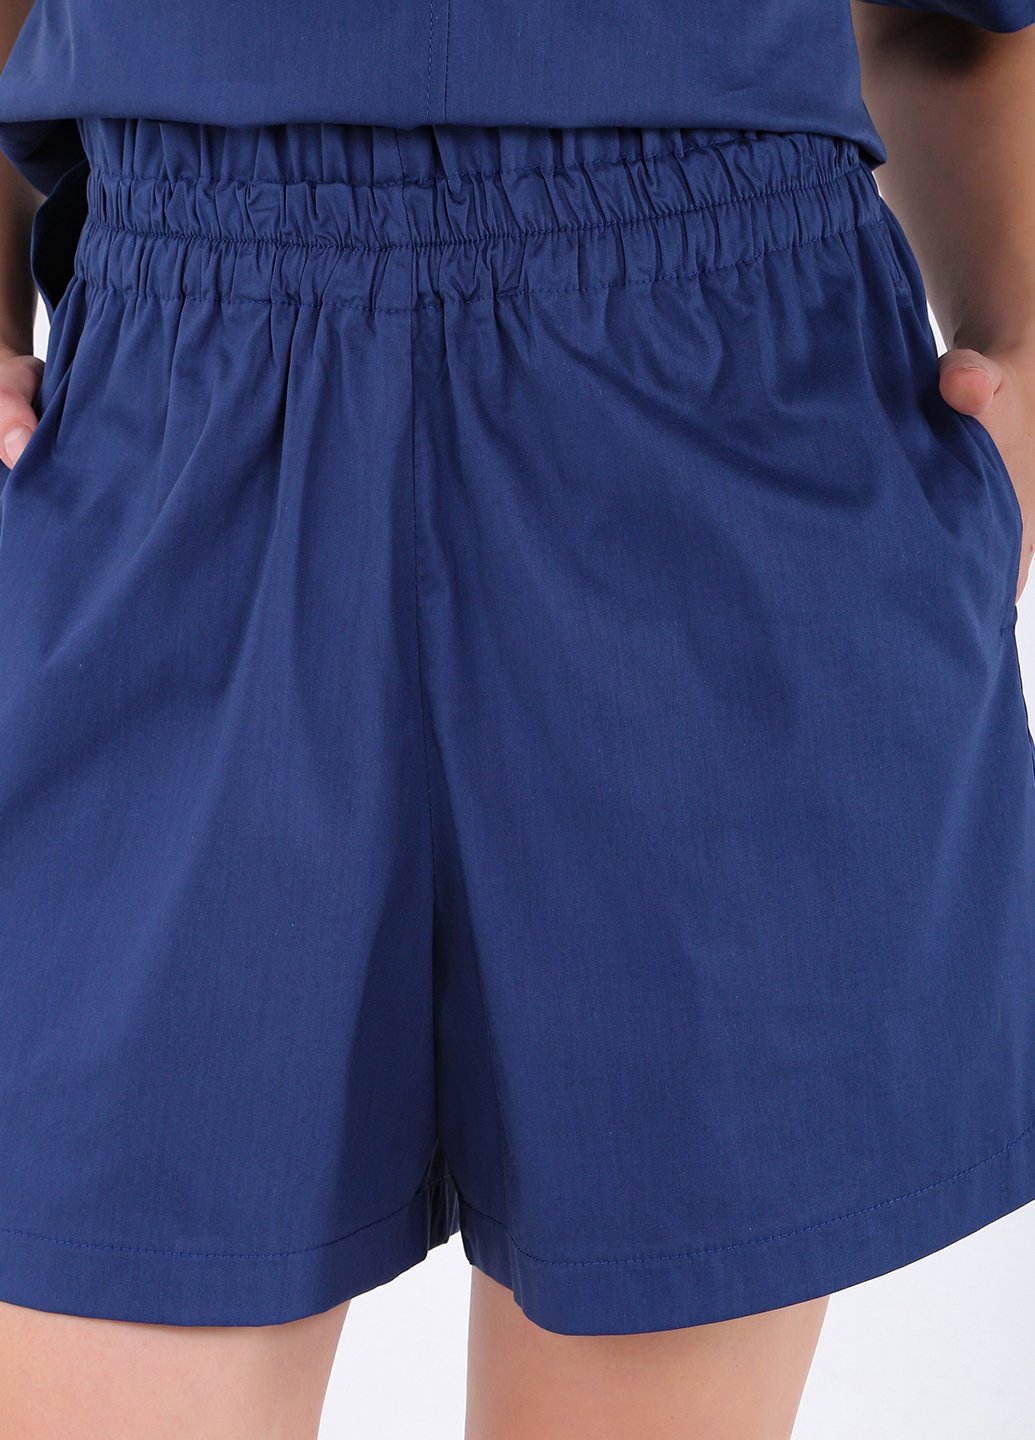 Купить Хлопковые шорты женские бермуды синего цвета Merlini Перуджа 300000052, размер 42-44 в интернет-магазине